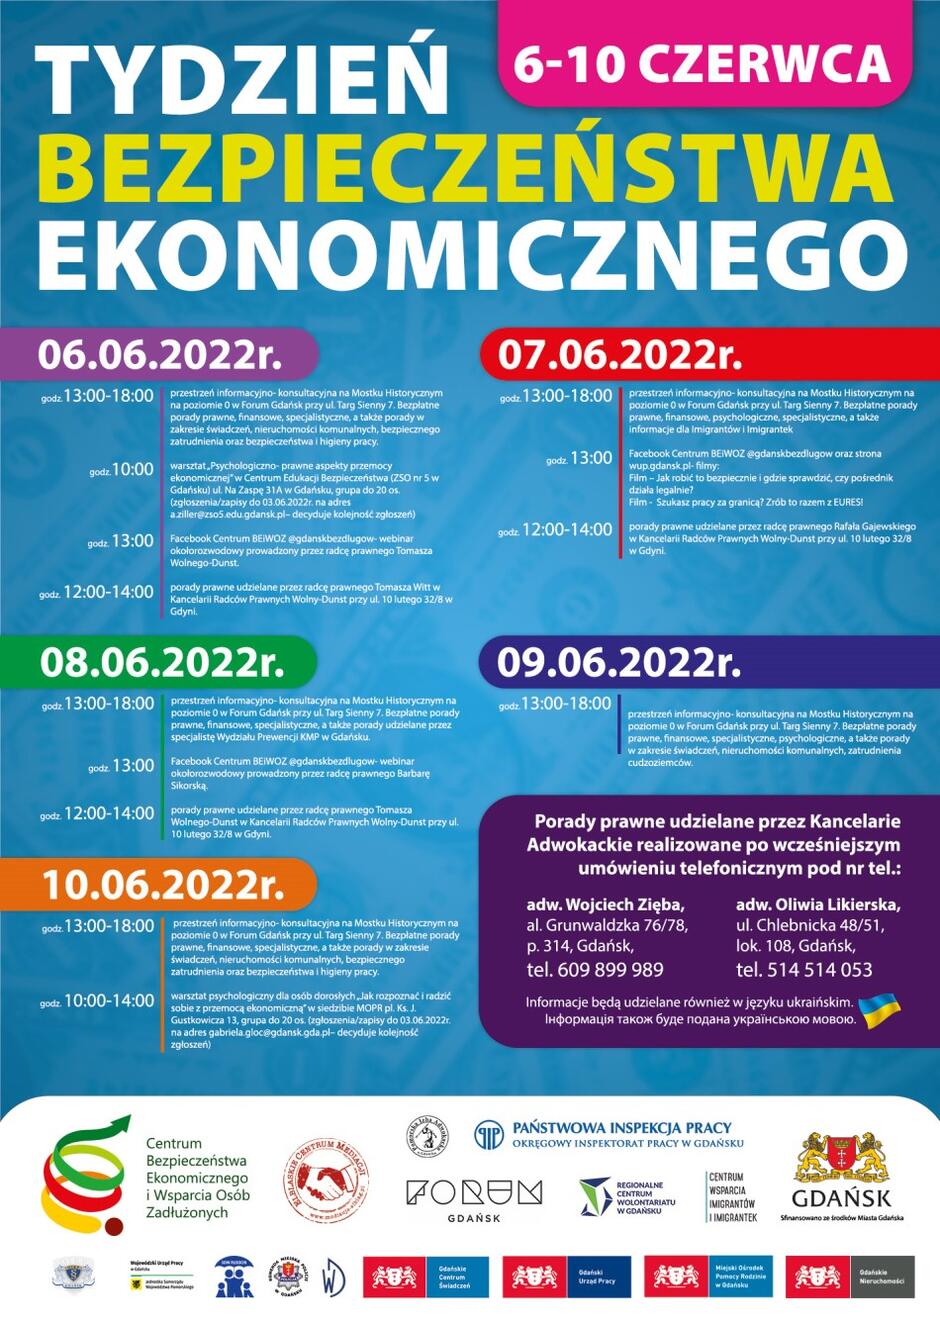 Tydzień Bezpieczeństwa Ekonomicznego 2022 - szczegółowy program